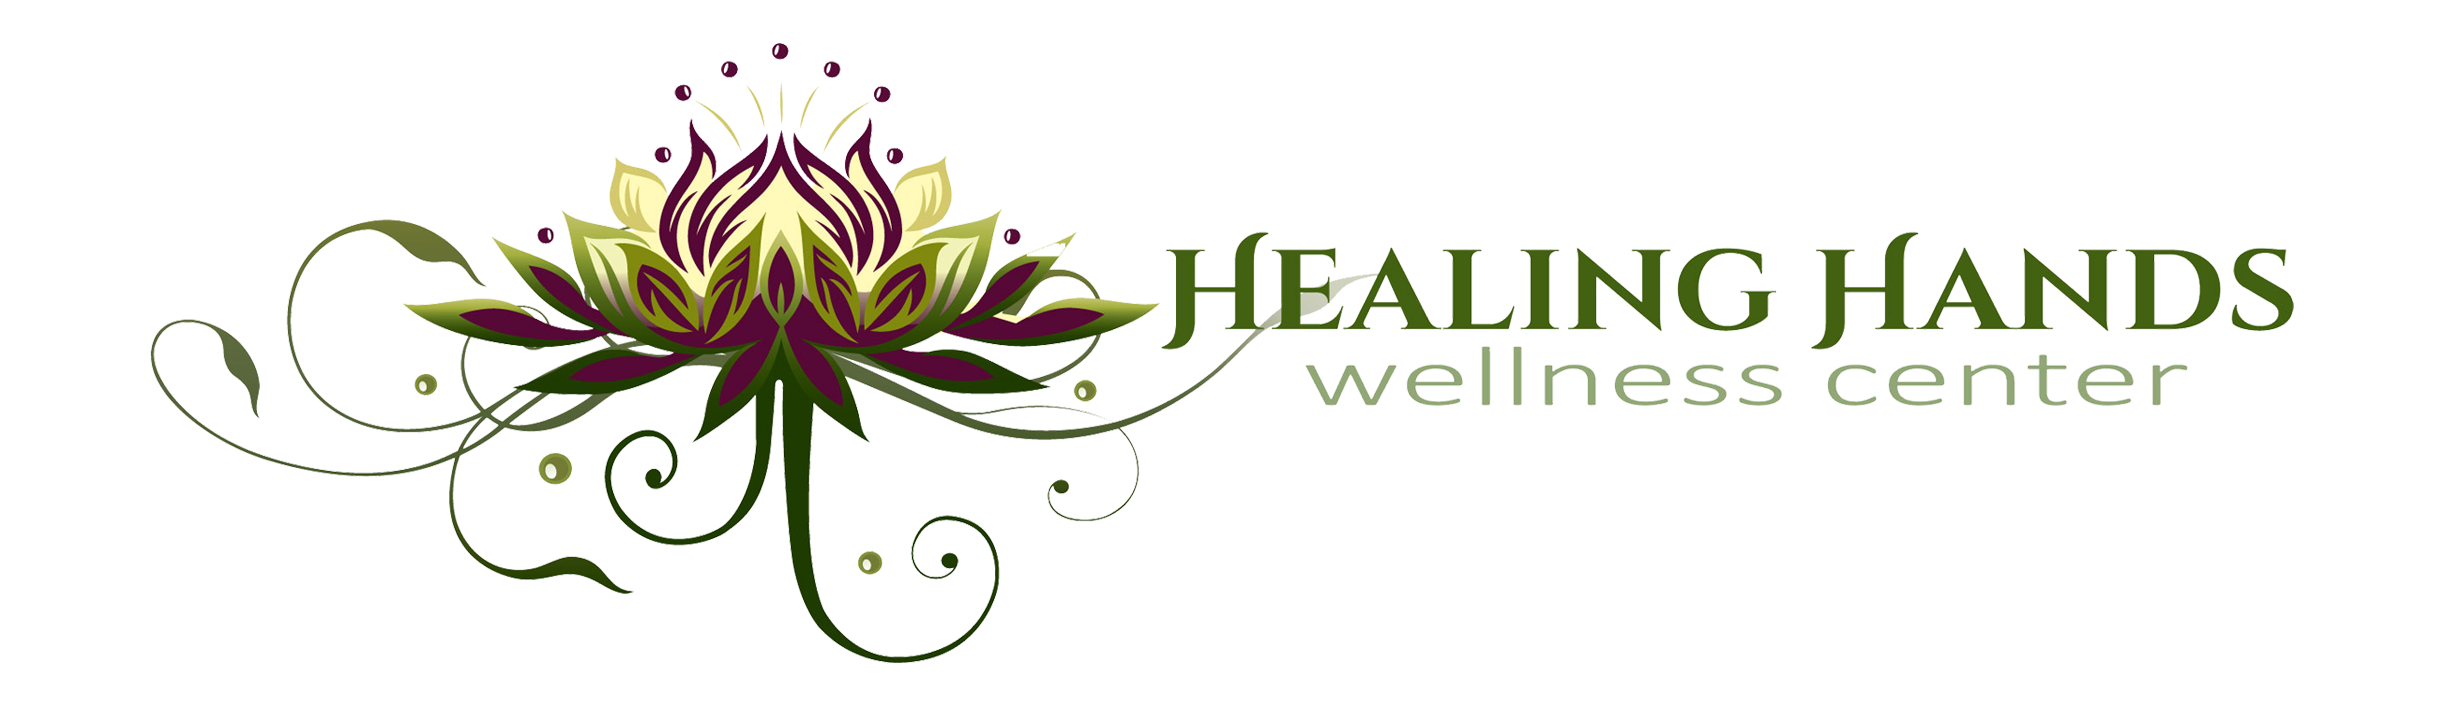 Healing Hands Wellness Center